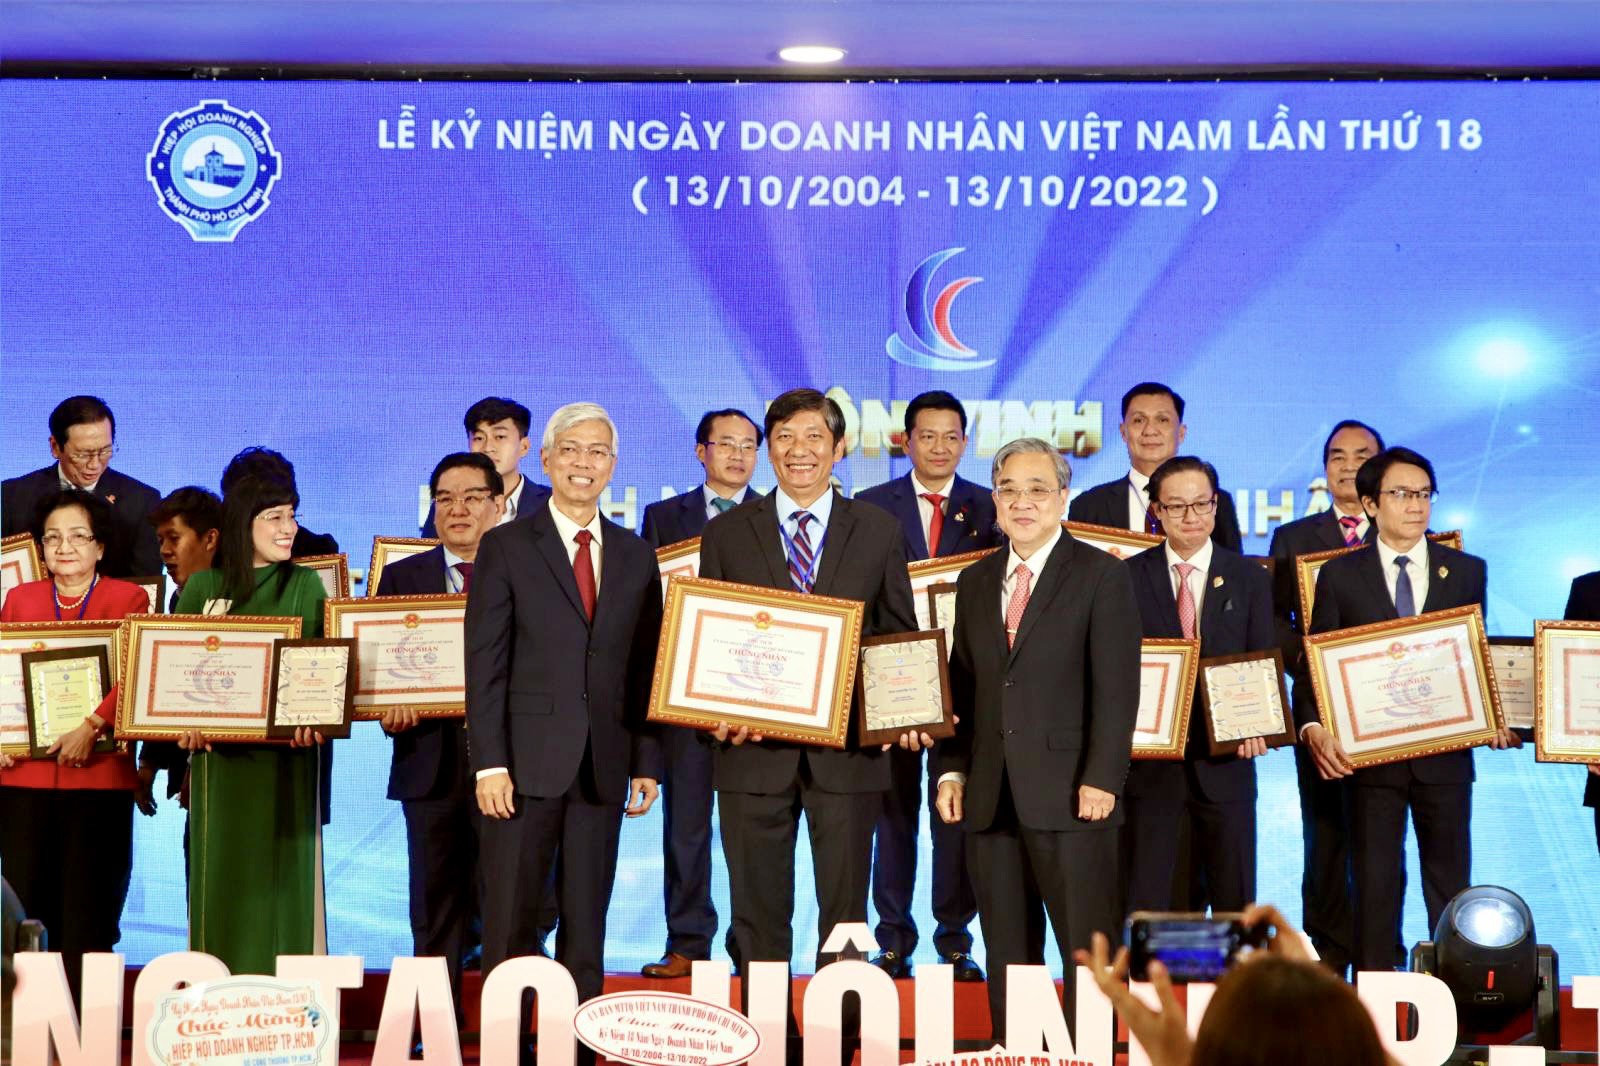 Vàng Mi Hồng vinh dự được UBND Thành Phố Hồ Chí Minh tôn vinh doanh nghiệp, doanh nhân tiêu biểu TP.HCM năm 2022
